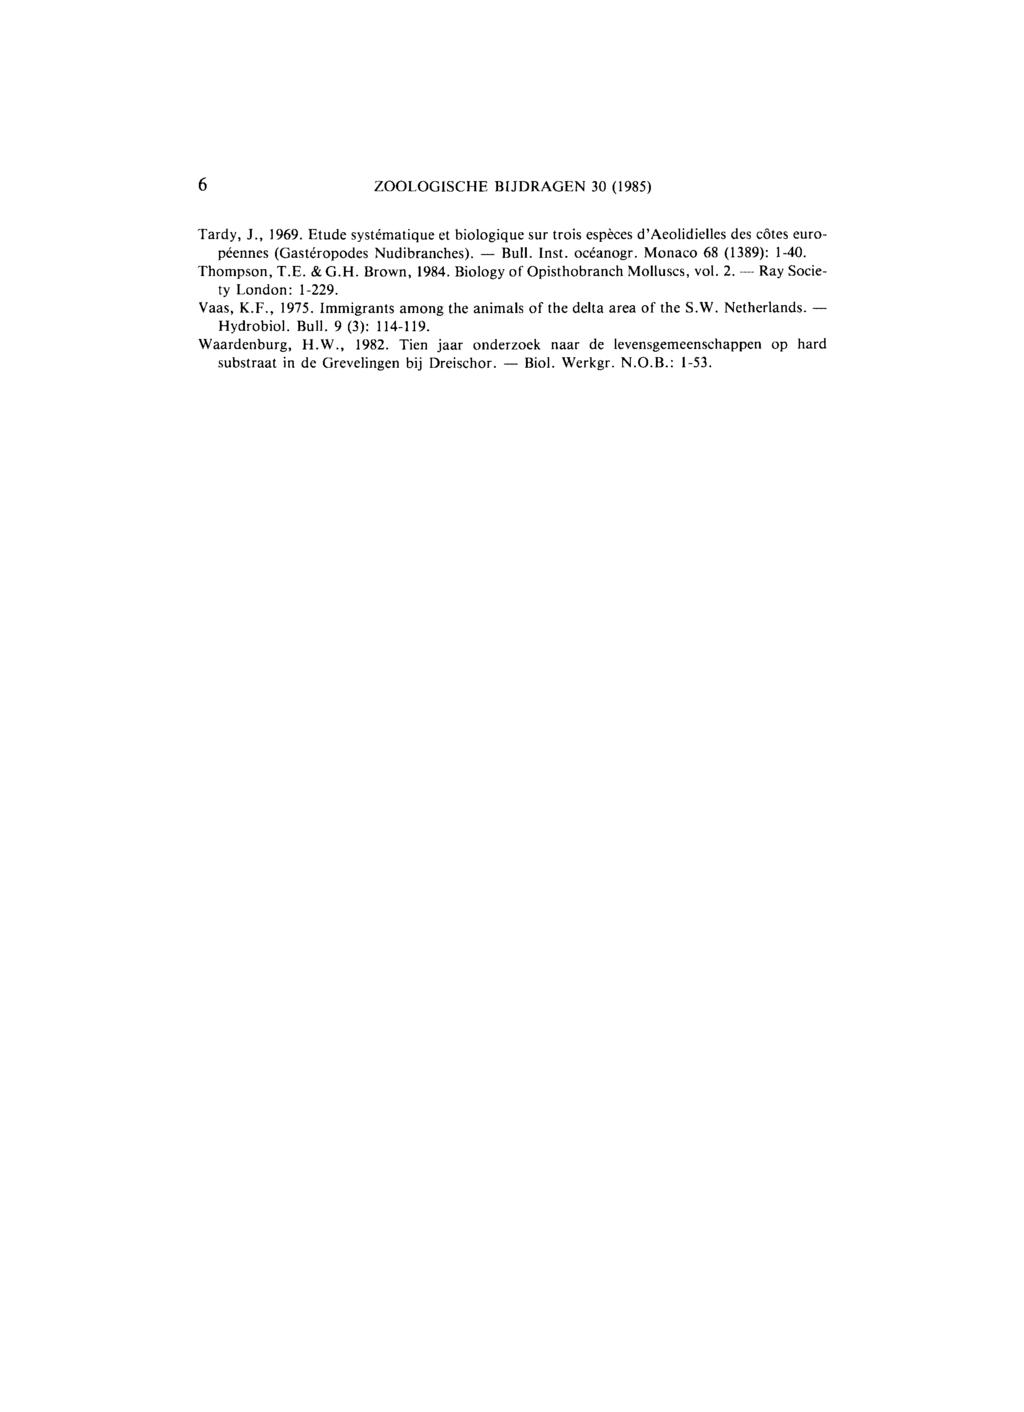 6 ZOOLOGISCHE BIJDRAGEN 30 (1985) Tardy, J., 1969. Etude systématique et biologique sur trois espèces d'aeolidielles des côtes européennes (Gastéropodes Nudibranches). Bull. Inst. océanogr.